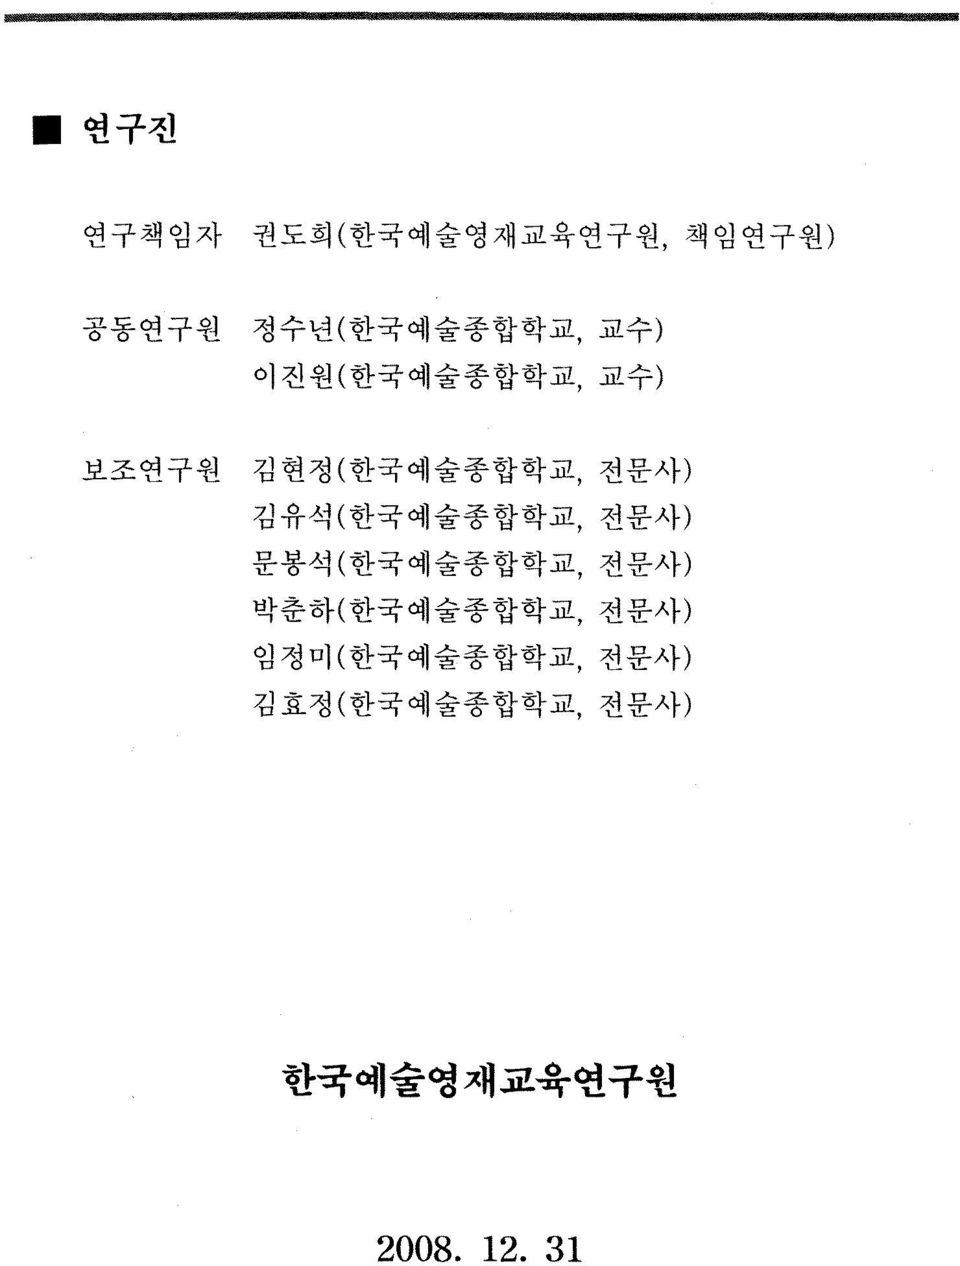 김유석(한국예술종합학교, 전문사) 문봉석(한국예술종합학교, 전문사) 박춘하(한국예술종합학교,